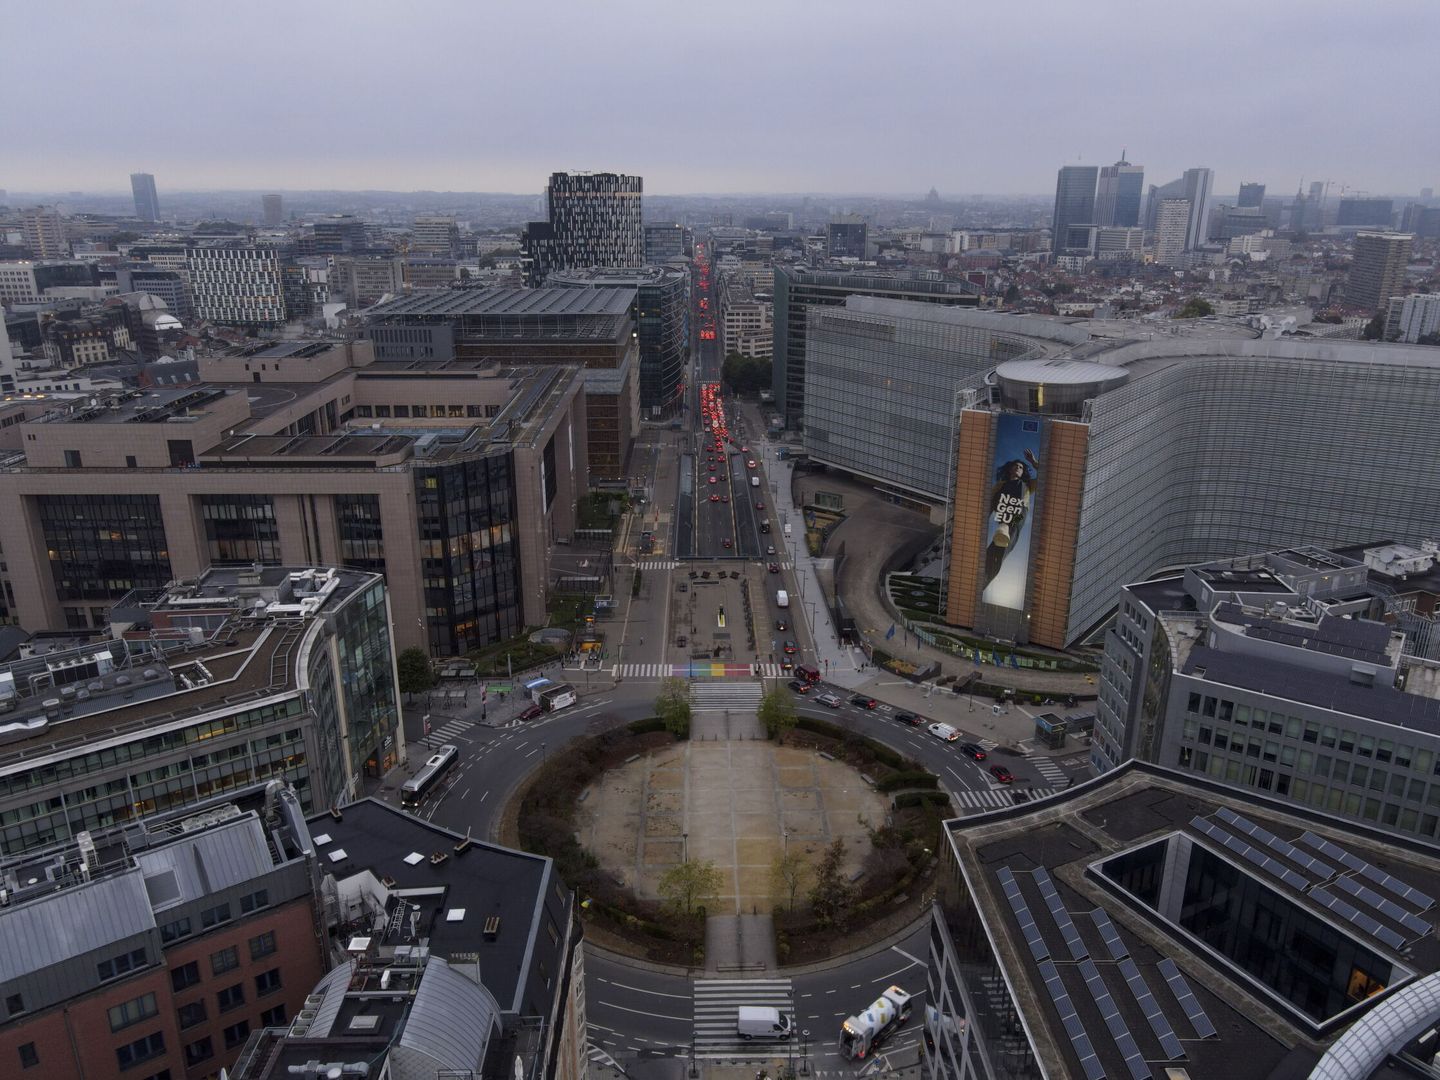 La rotonda de Schuman, corazón del barrio europeo de Bruselas. (EFE)